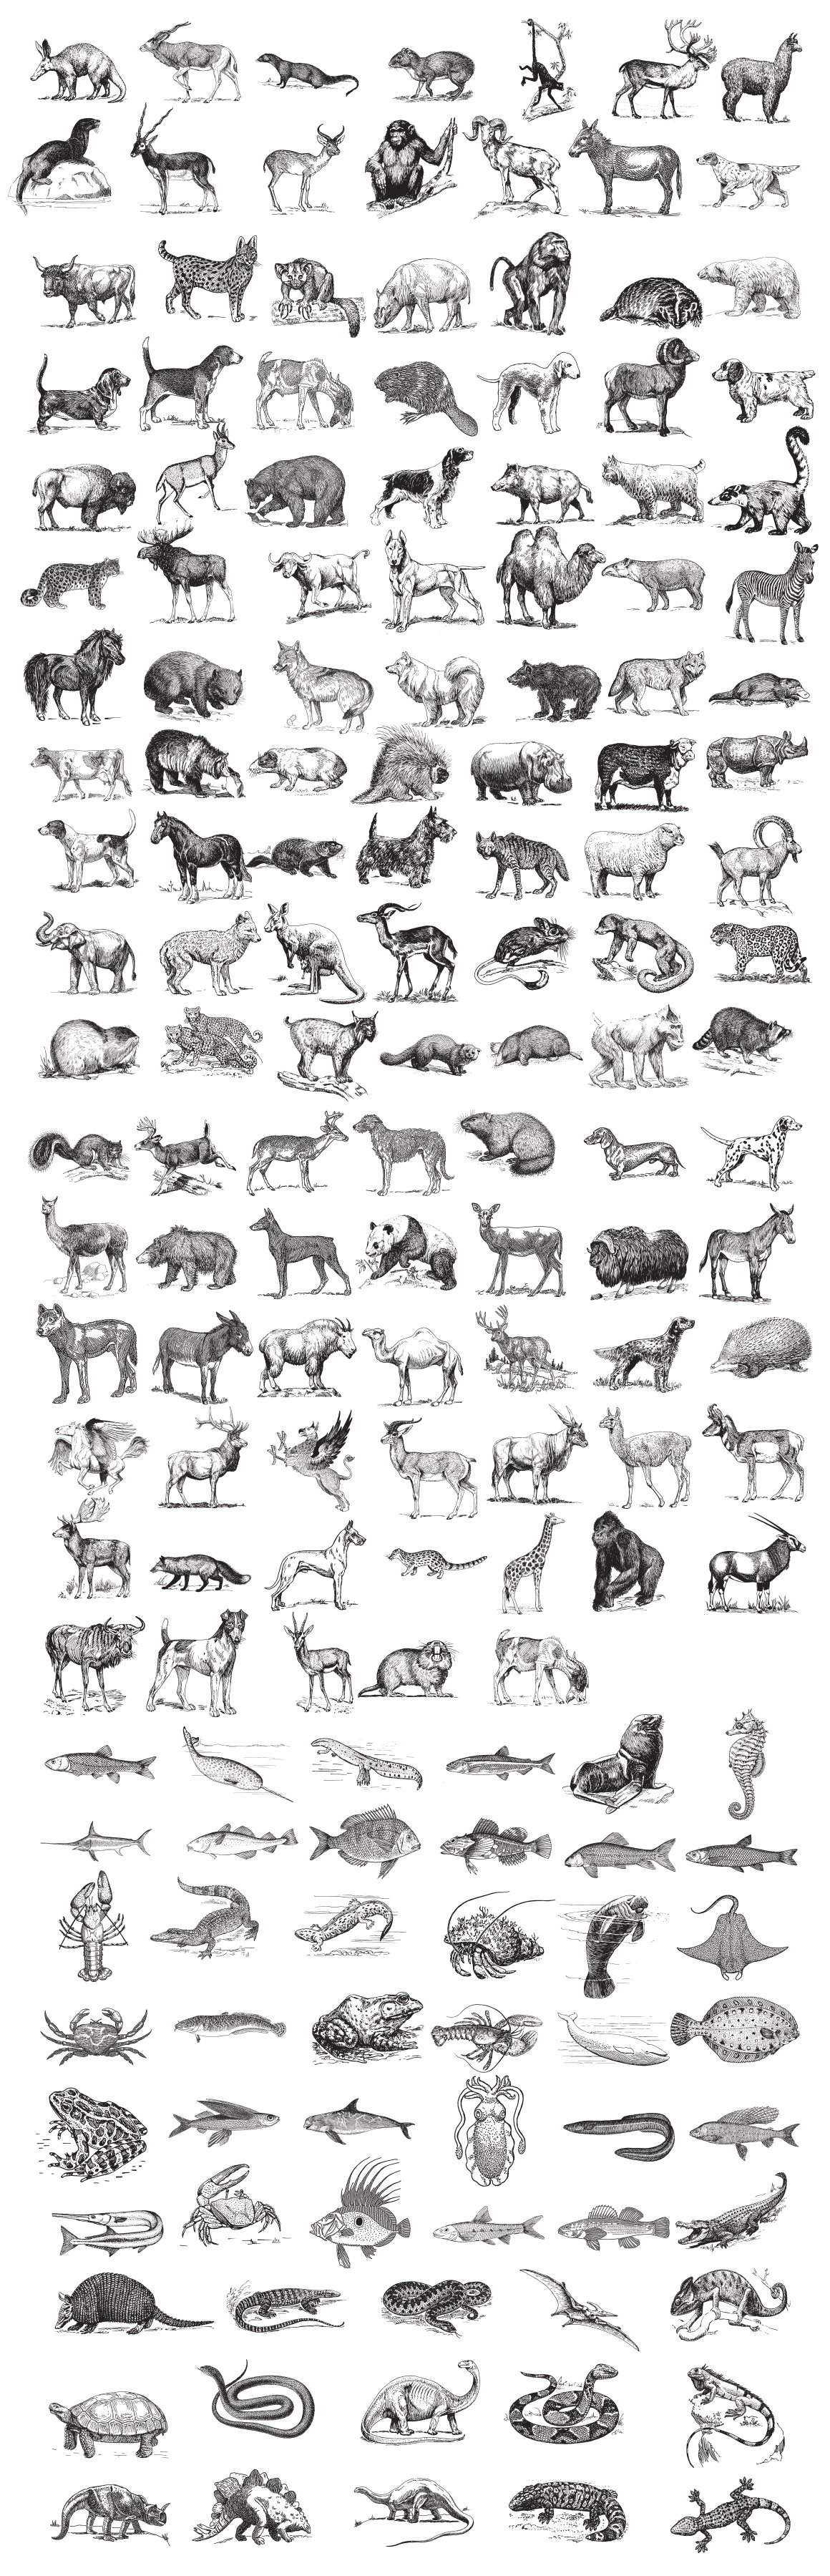 Zoology – Vintage Animal Illustrations